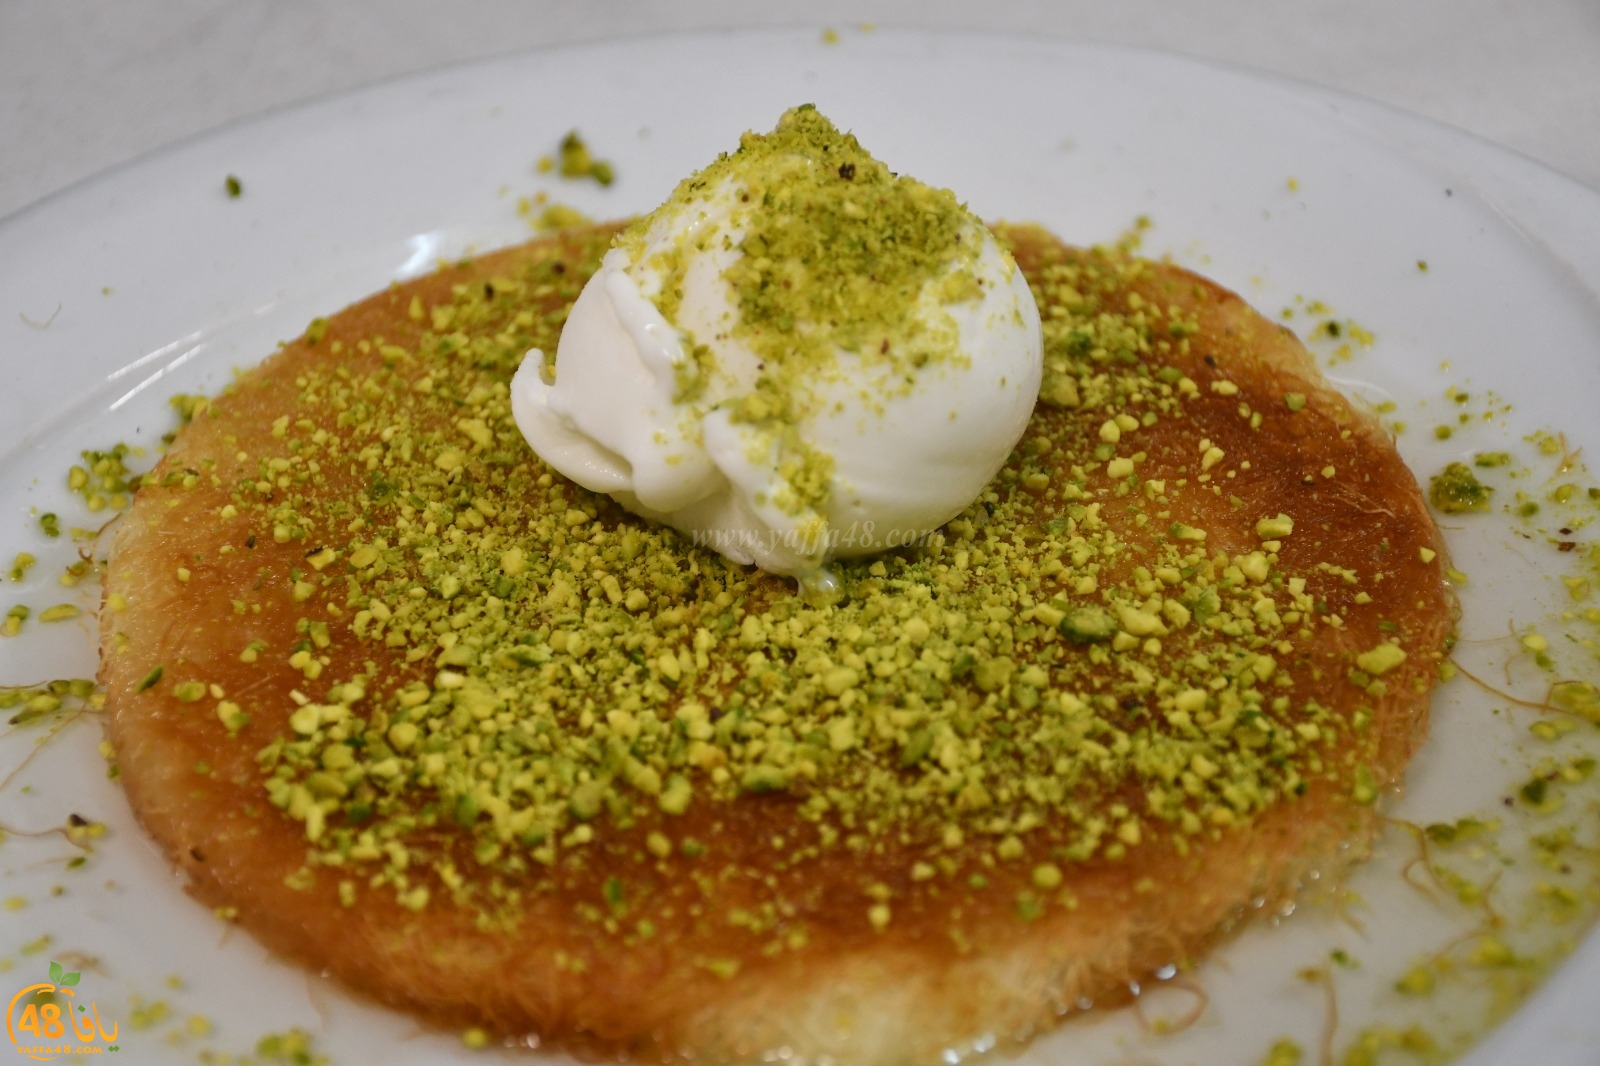 زورونا في مطاعم حاج كحيل - أصالة وفخر الطعام الشرقي في يافا 